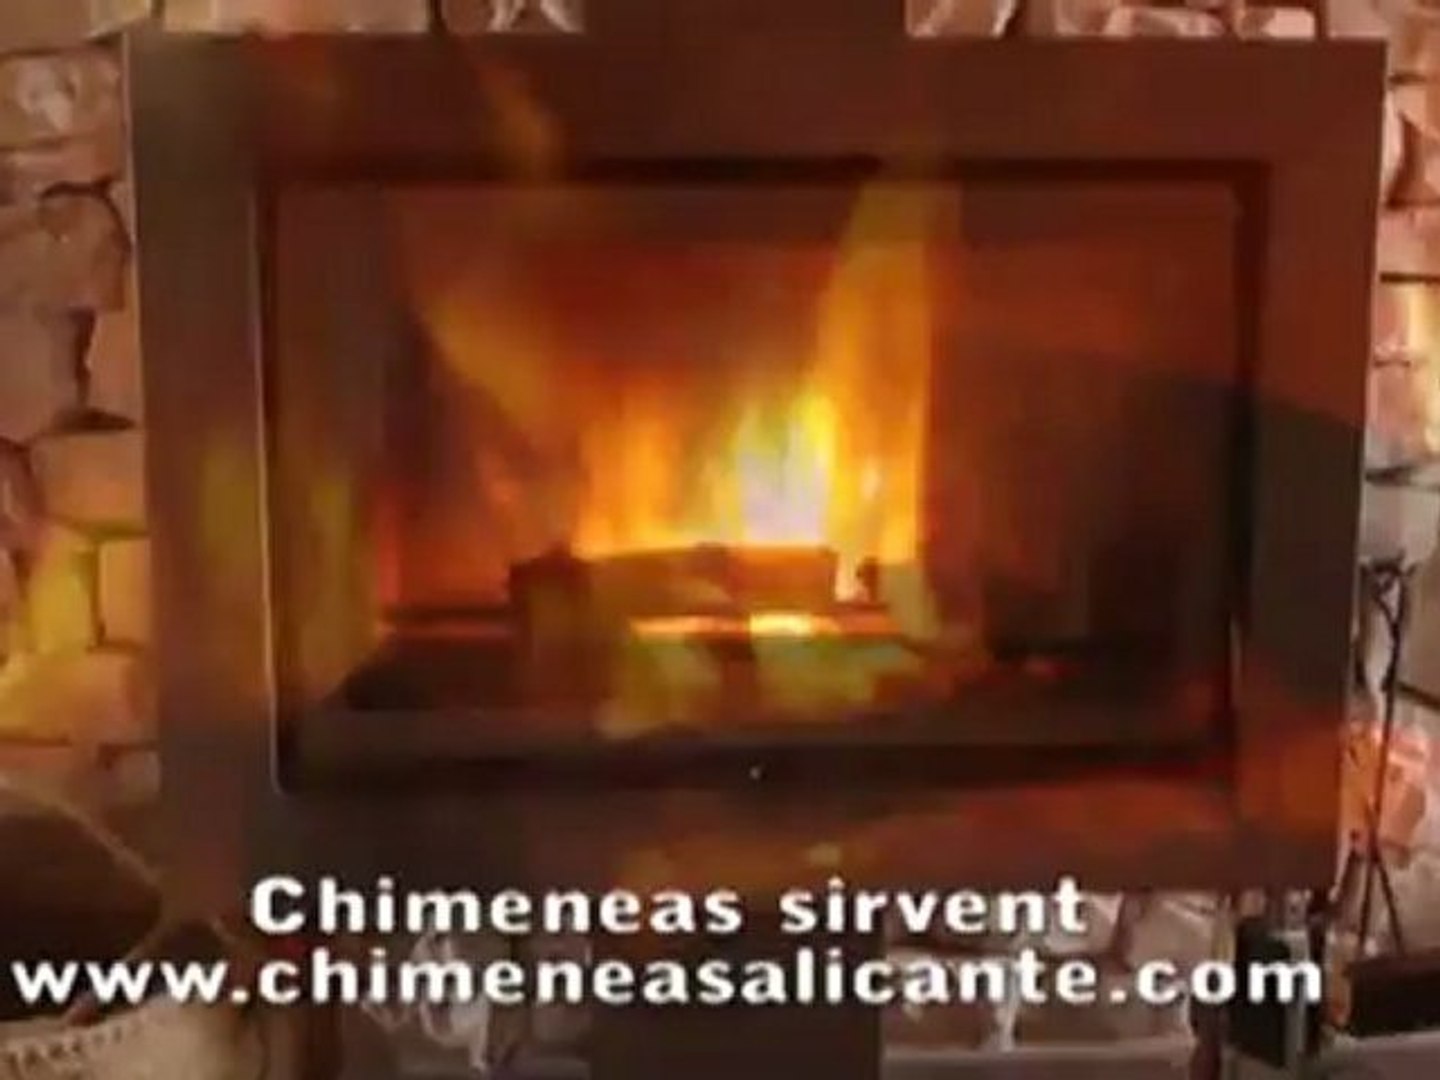 Estufas y Chimeneas precio Sirvent en Alicante Alcoy, Alcoi Cocentaina,  Ontinyent, Onteniente, Bonalba, Jijona, Ibi, Petrer, Elche, Elda - Vídeo  Dailymotion